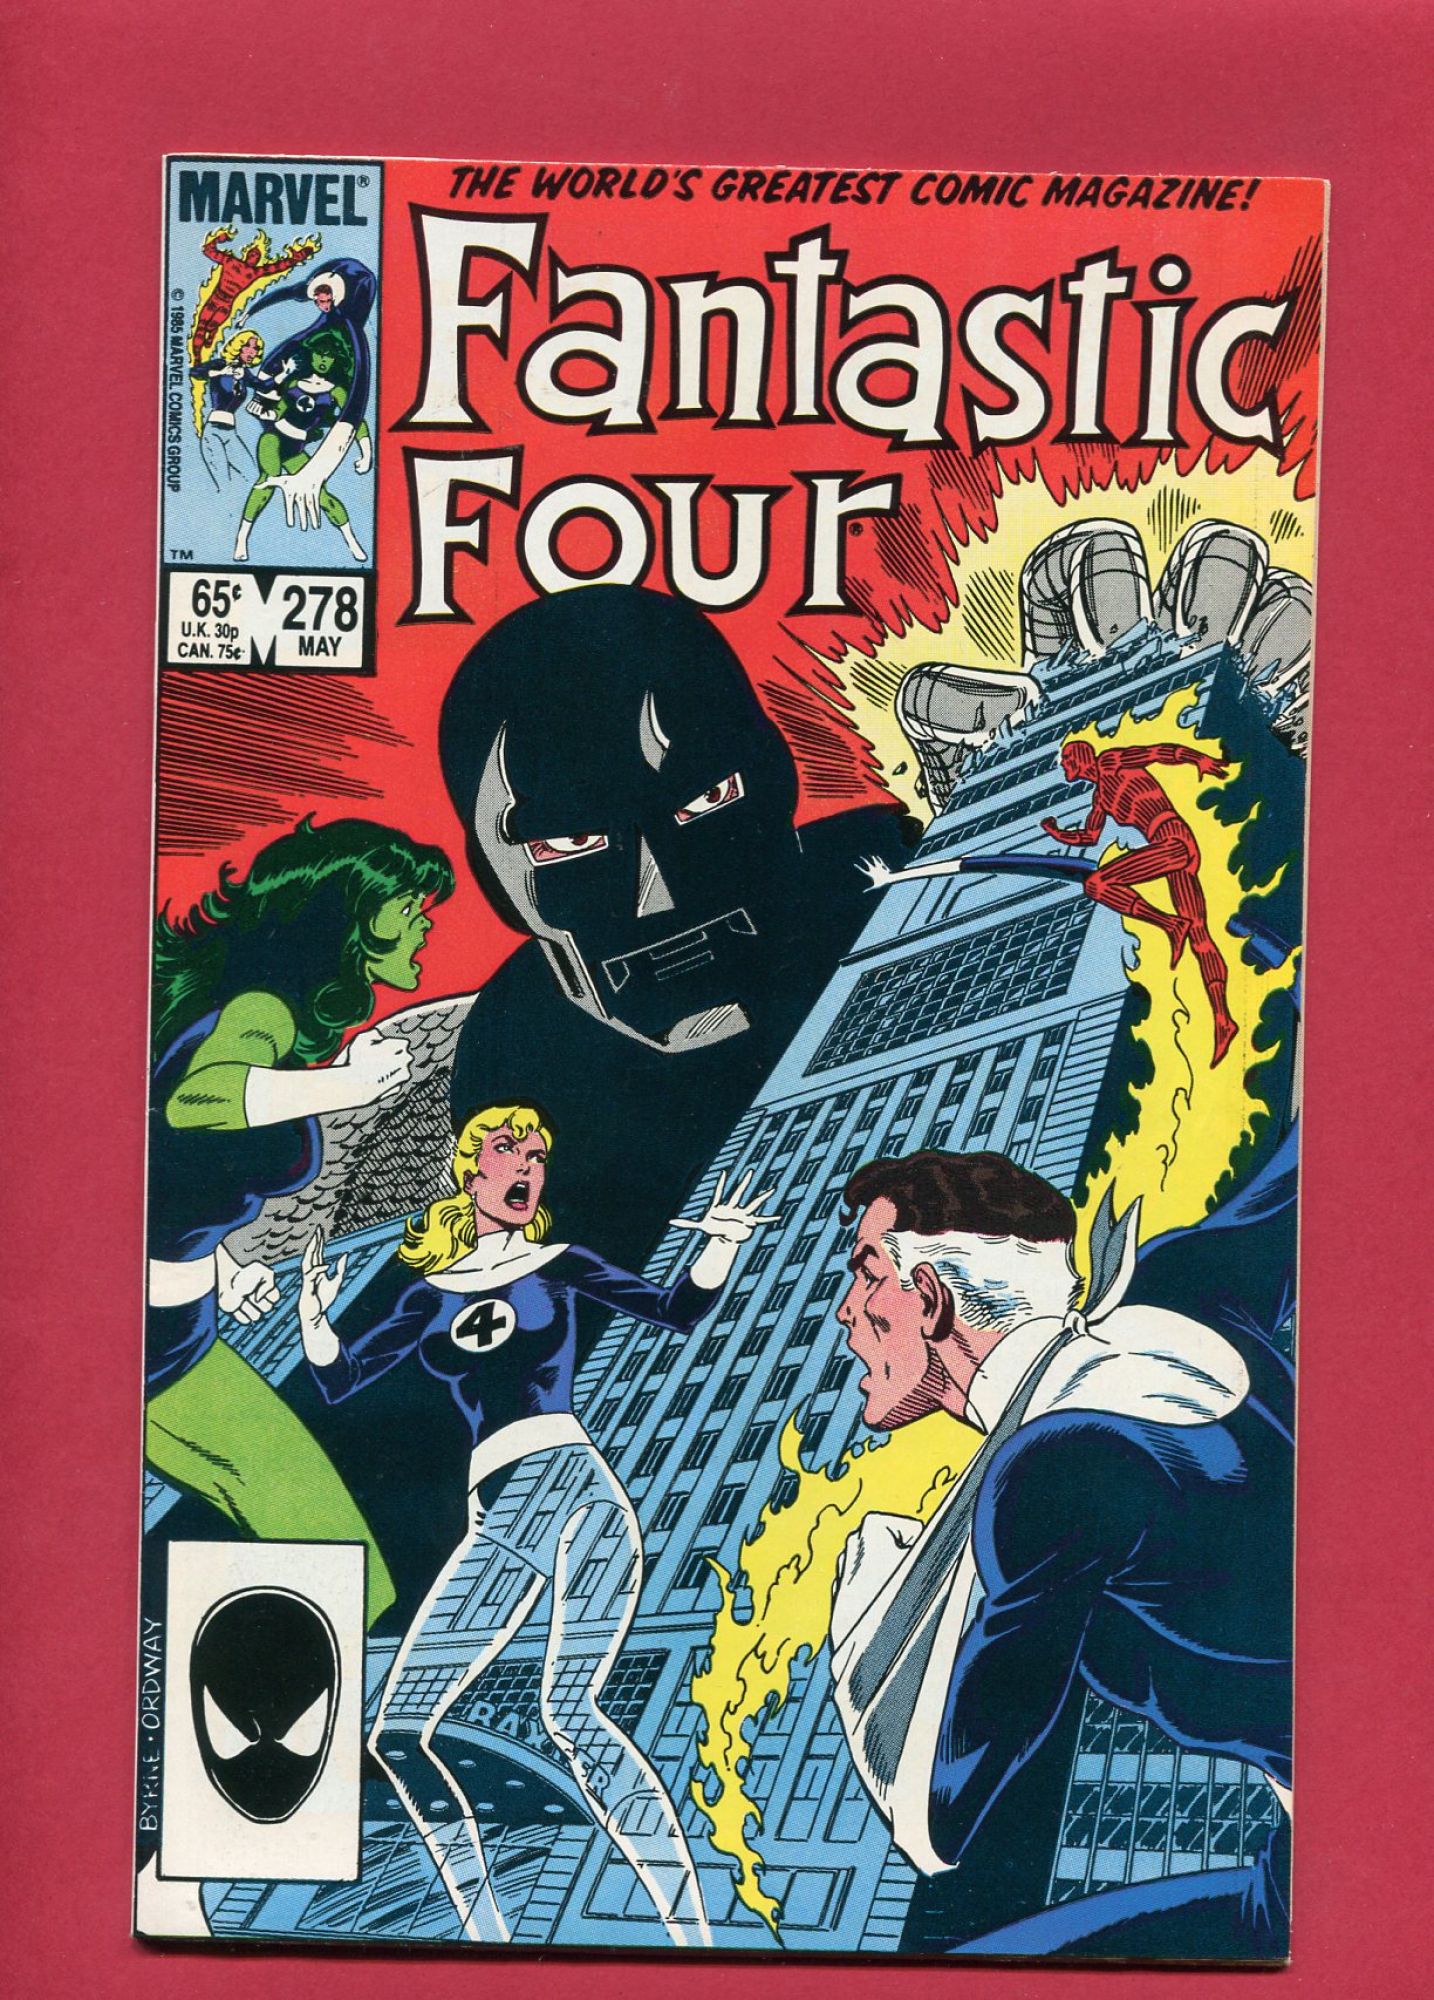 Fantastic Four #278, May 1985, 8.5 VF+